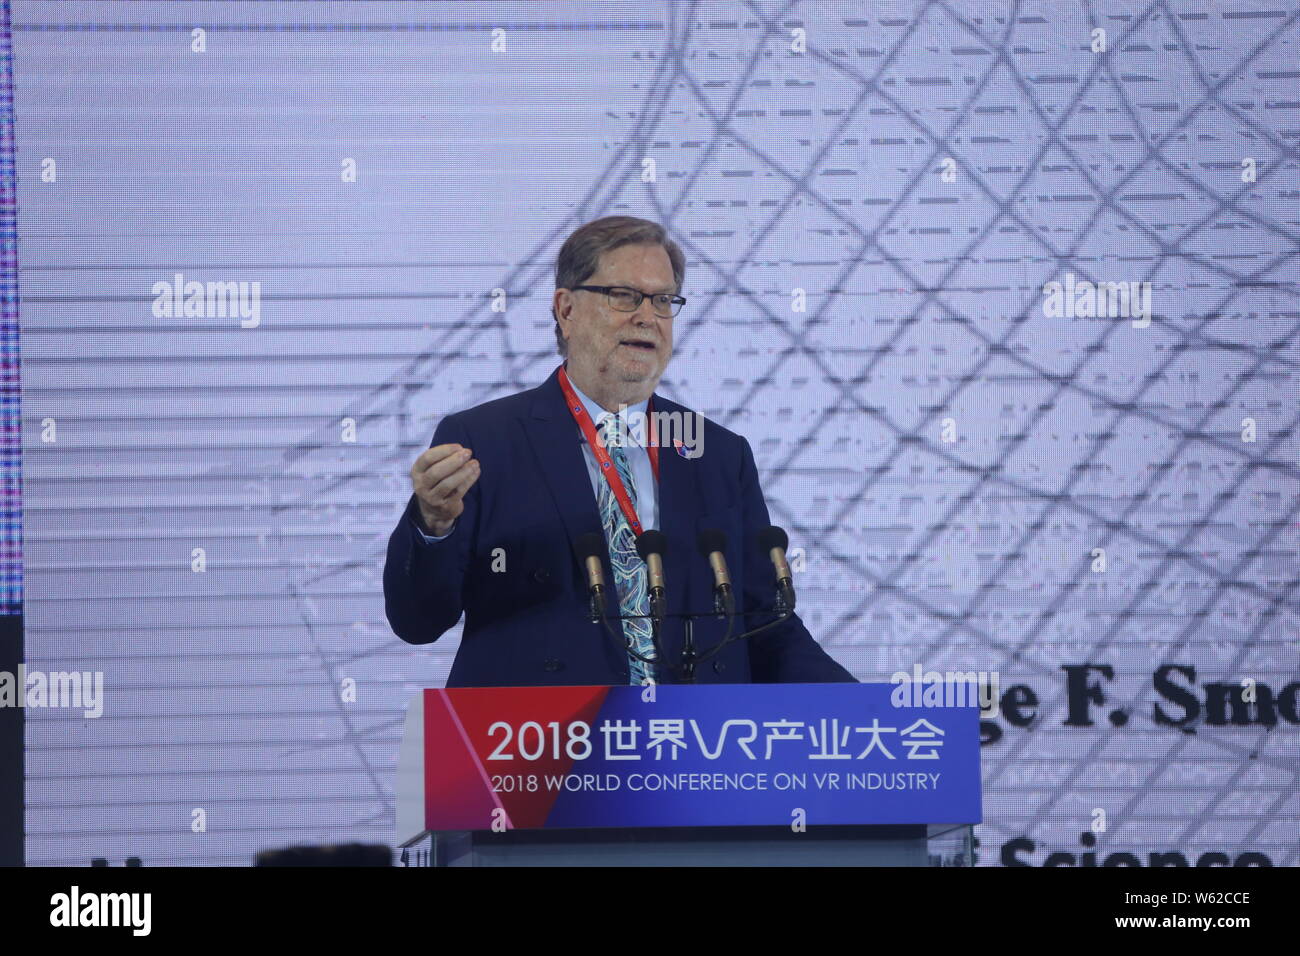 Astrophysicien et cosmologiste américain George Smoot, le gagnant du Prix Nobel de physique 2006, parle au cours de la Conférence mondiale 2018 sur l'industrie VR Banque D'Images